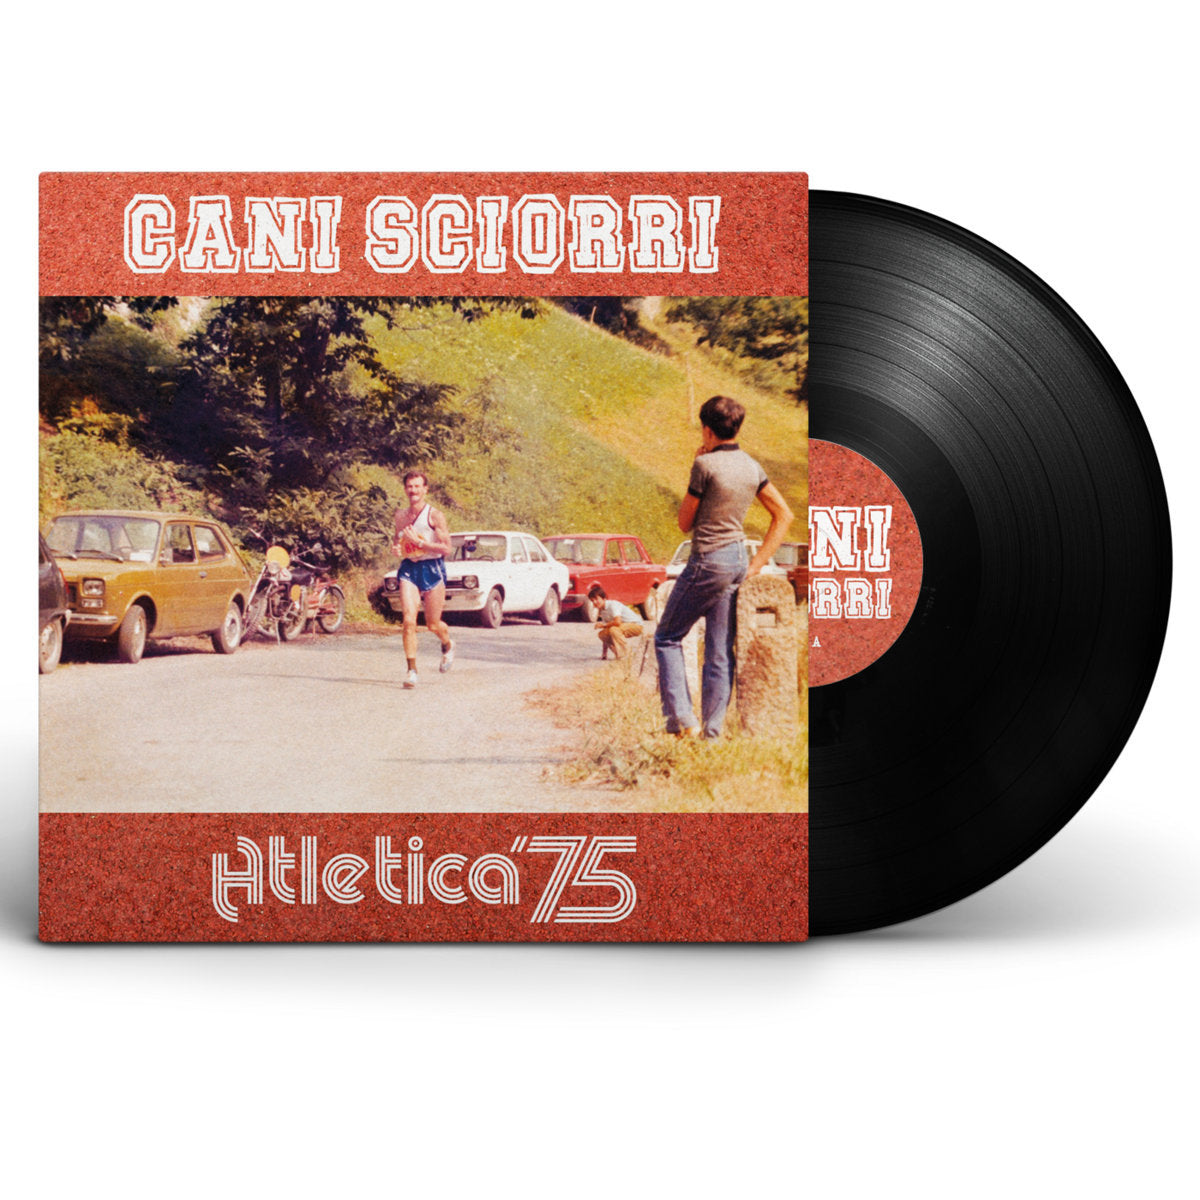 Cani Sciorri - "Atletica '75"  Vinyl LP